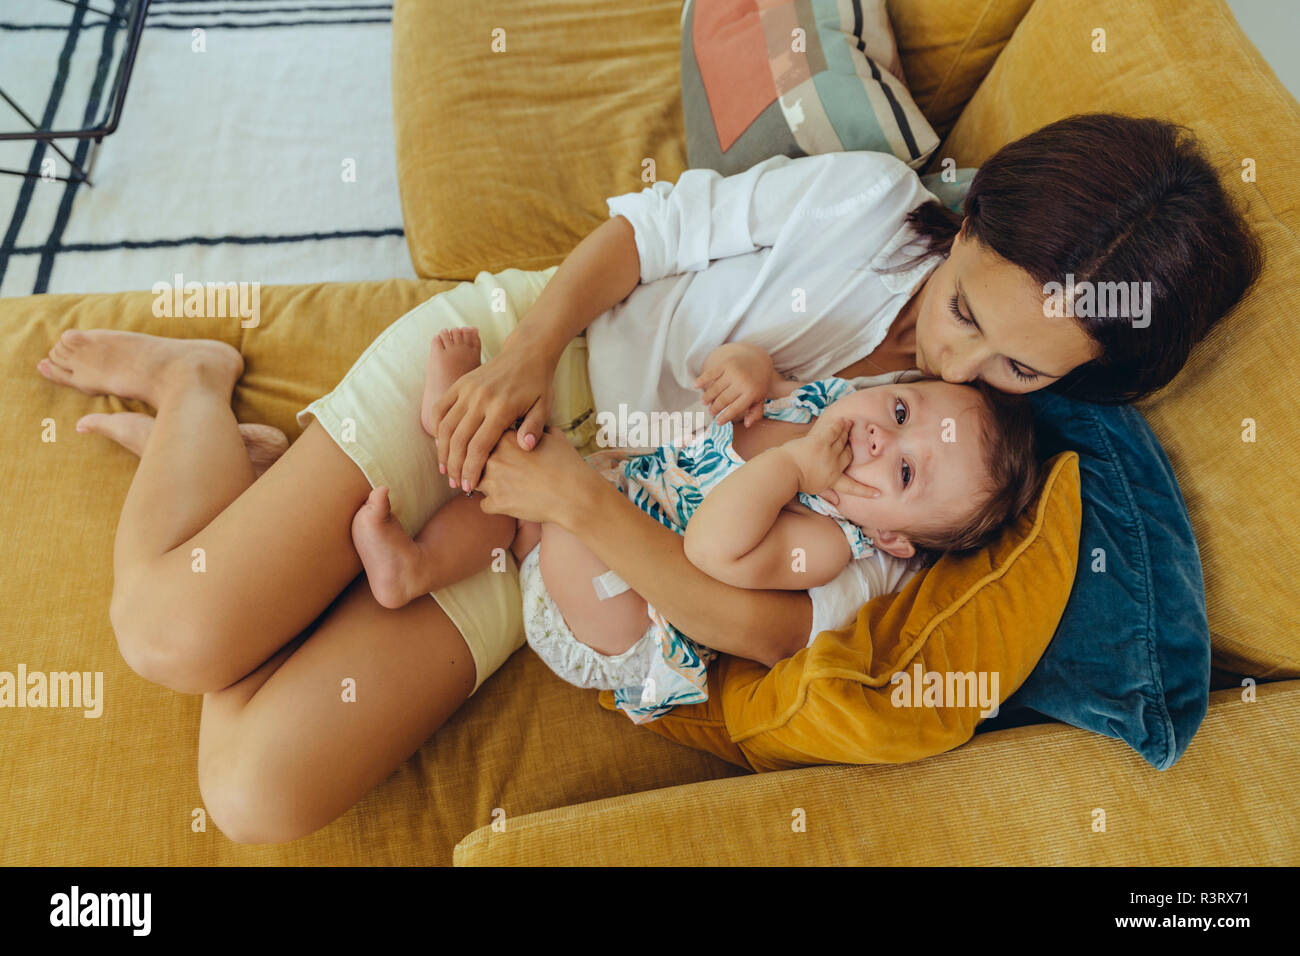 Mutter kuscheln und küssen ihr Baby Mädchen auf der Couch Stockfoto